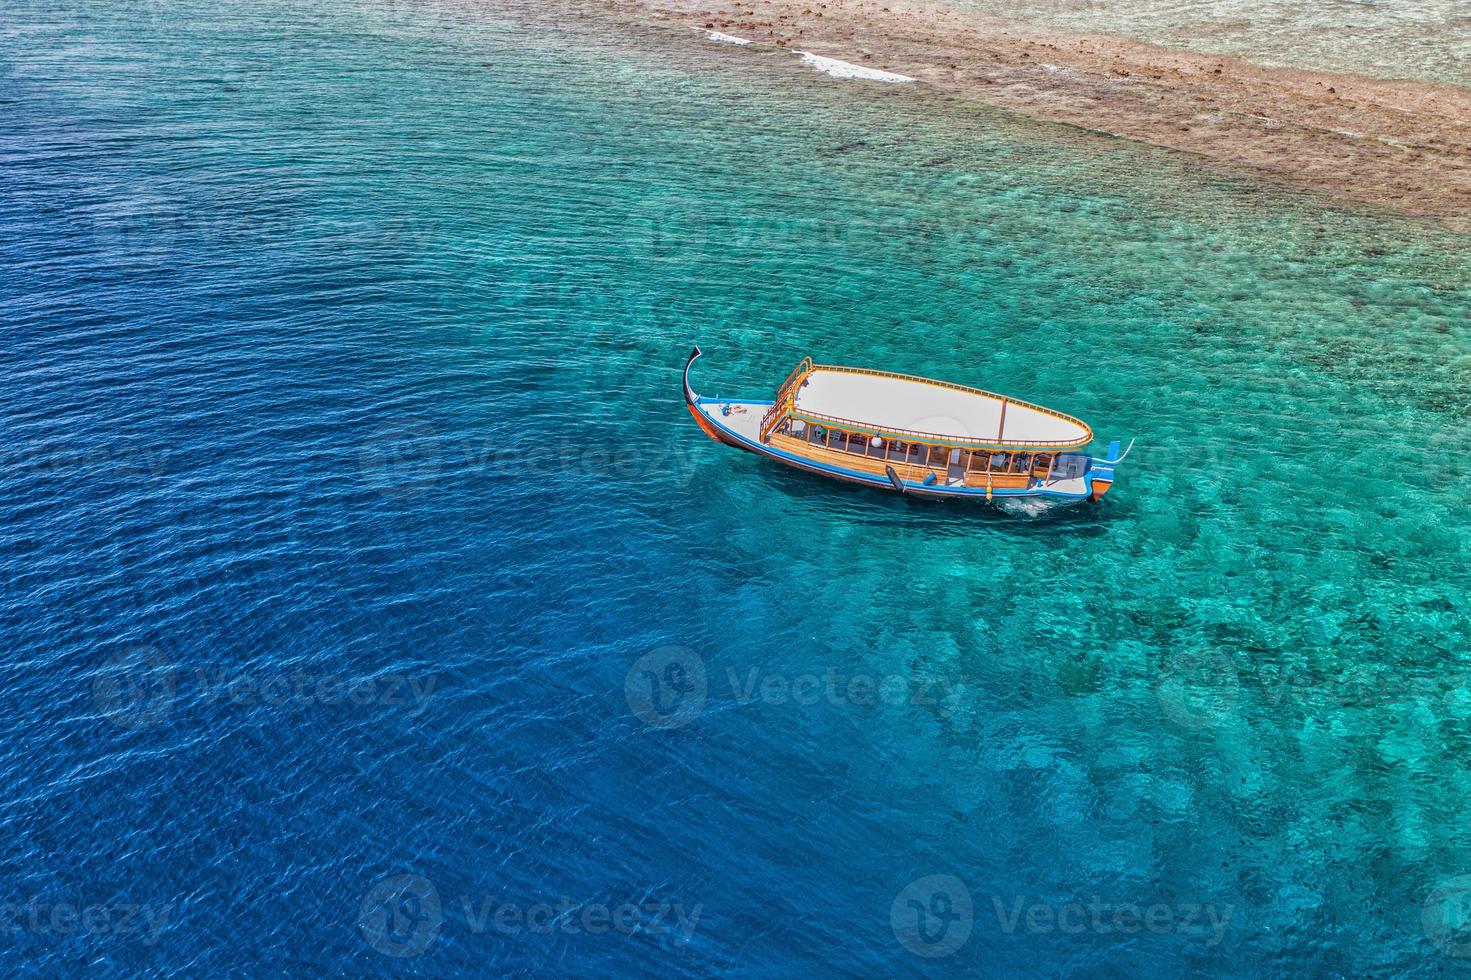 bateau de plongée exotique maldivien dans un magnifique lagon océanique au-dessus du corail ref. tuba et aventure en plein air, concept de paysage de voyage d'activité. vue aérienne sur la mer, nature tranquille, vacances de voyage de luxe pittoresques photo